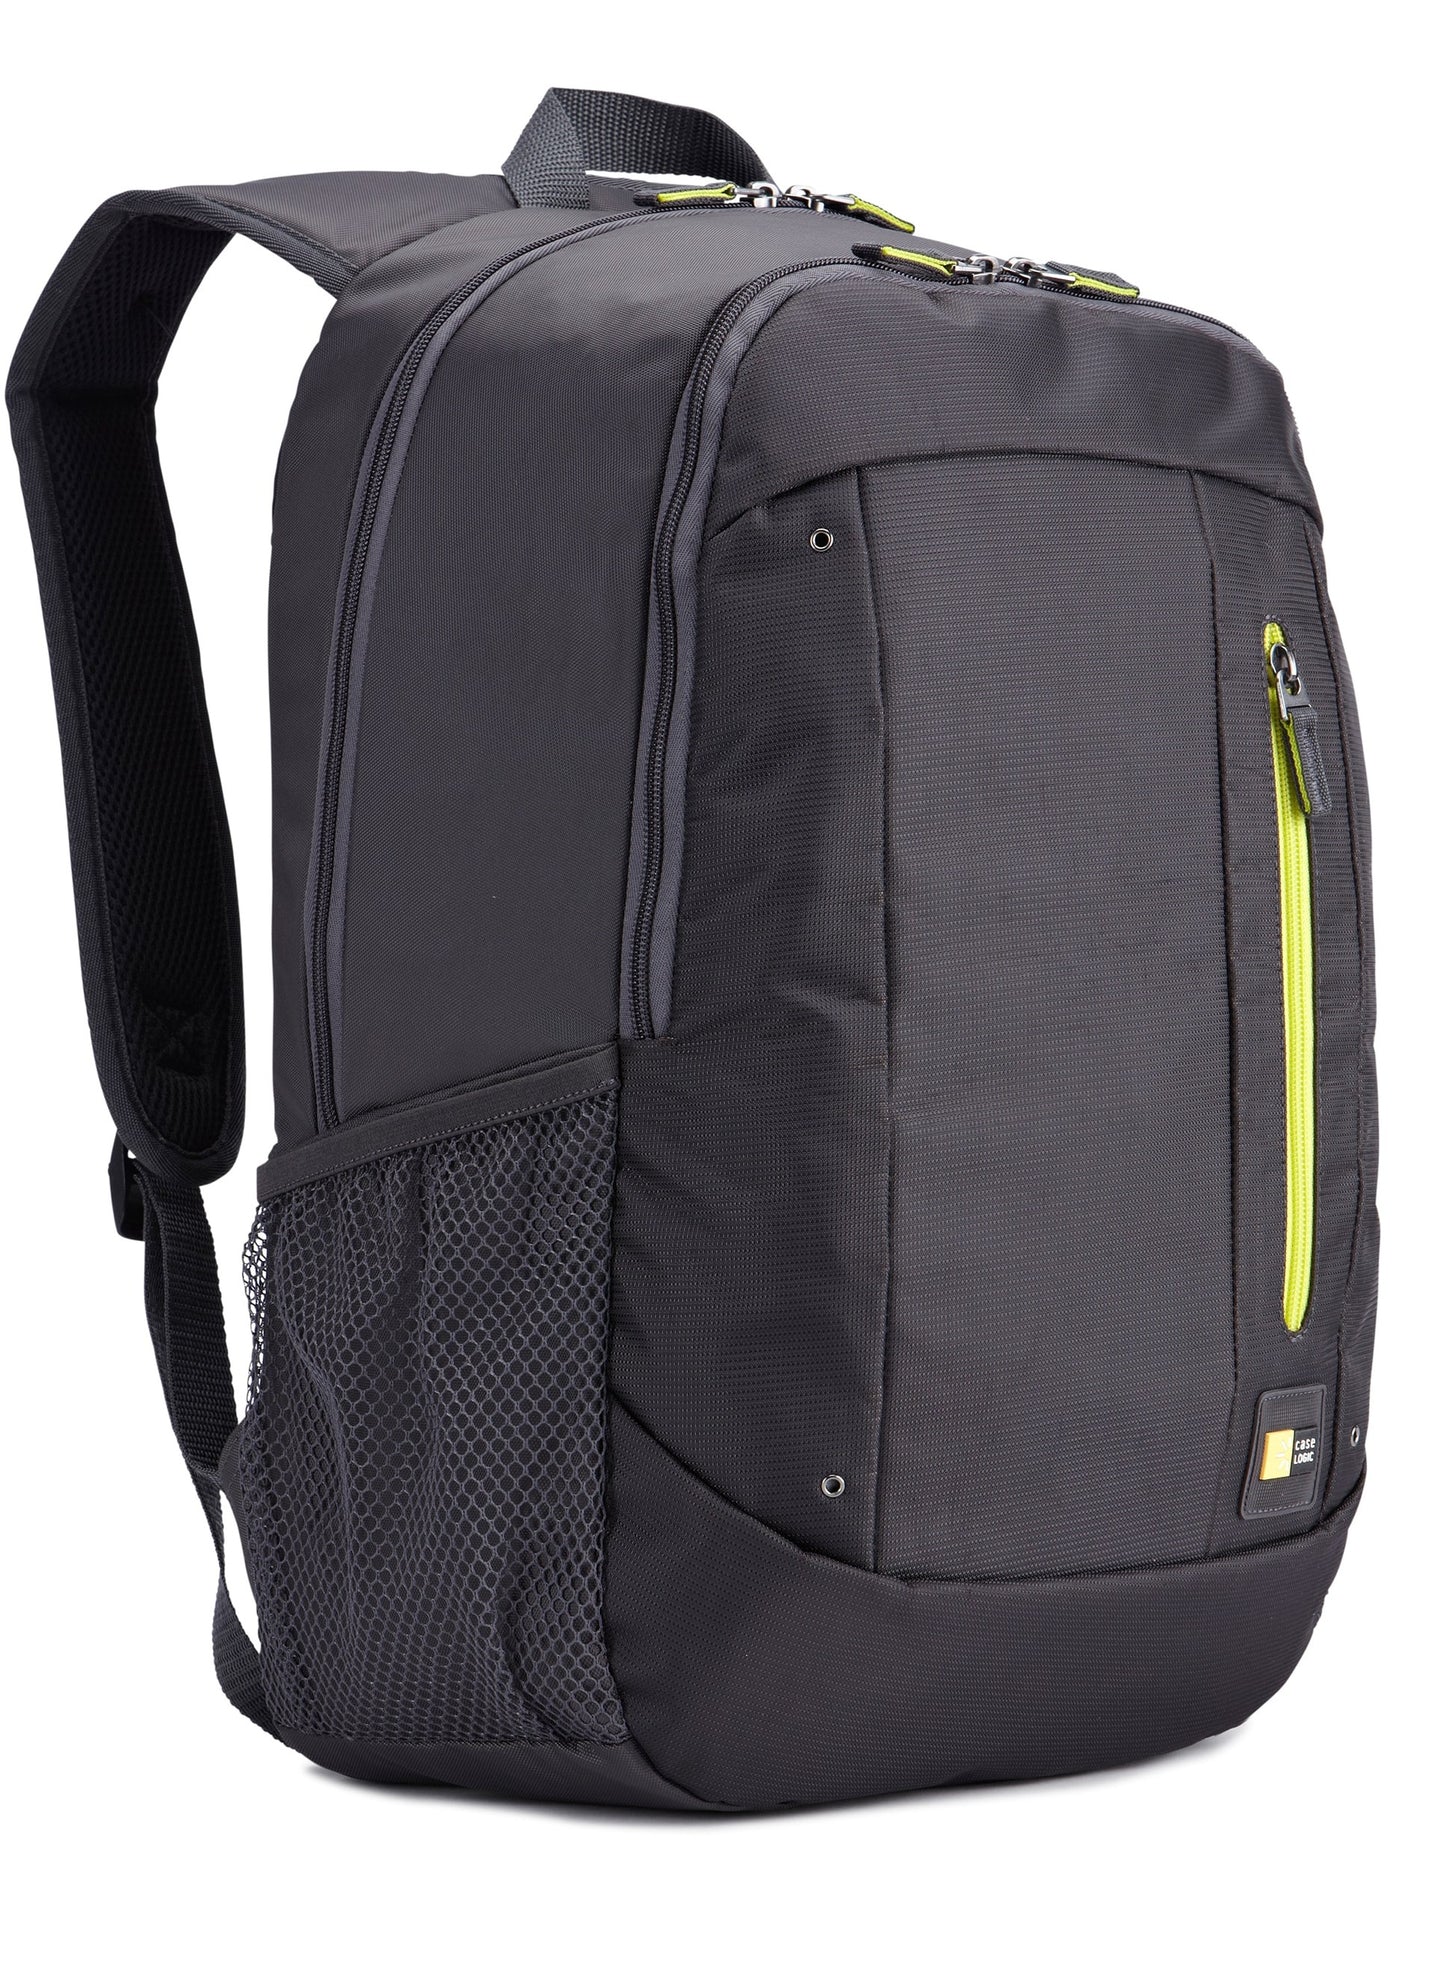 Case Logic Laptop Backpack For Unisex 15.6 Inch, Black - WMBP115 BK